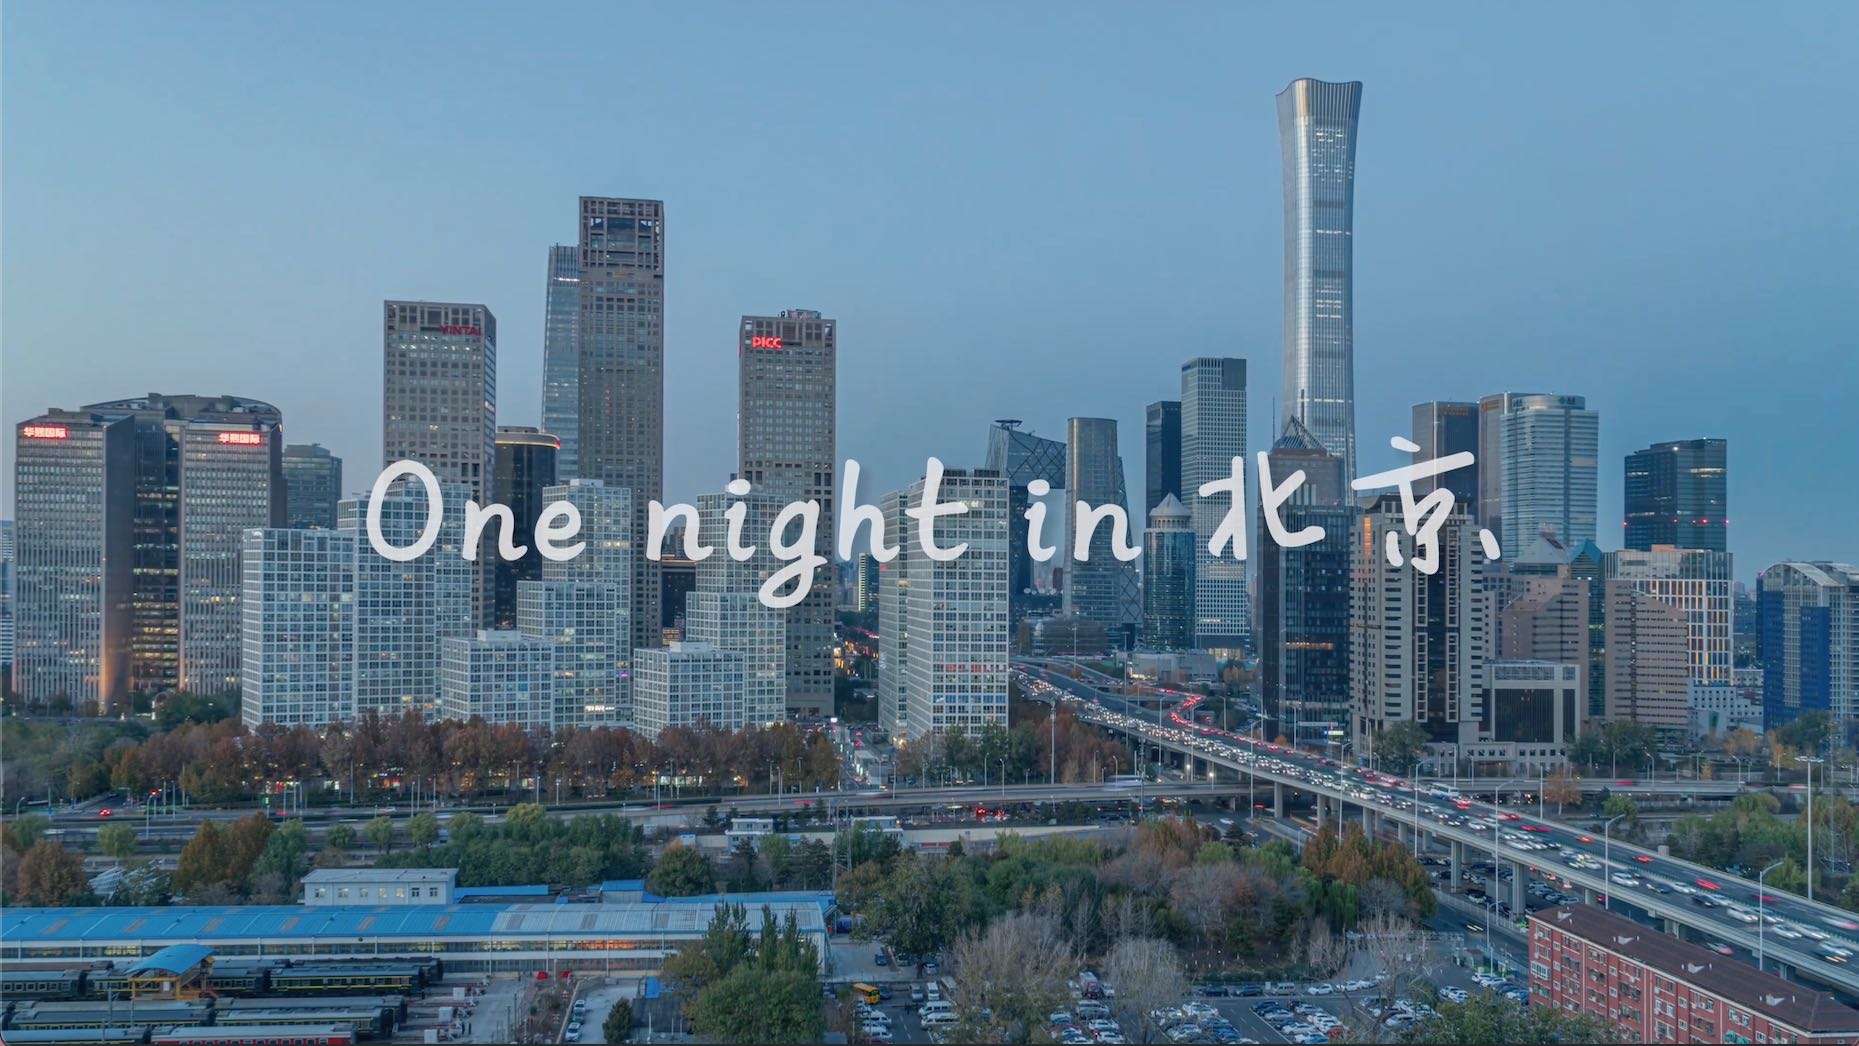 北京一夜 One night in Beijing【新时代·新影像计划优秀作品】